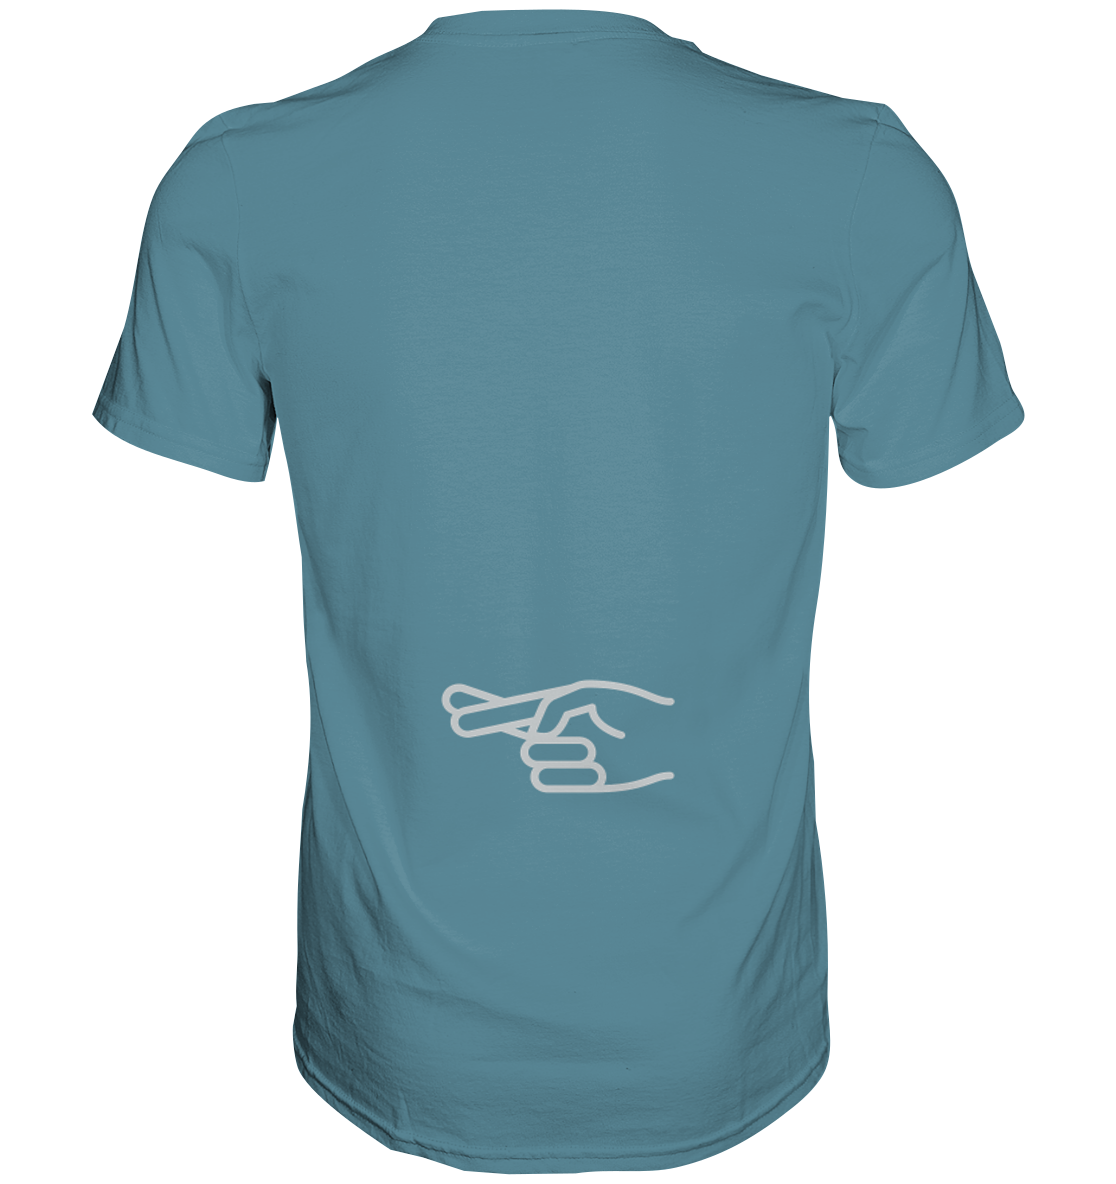 Herren-T-Shirt Rundhals mit beidseitigem Aufdruck "Natürlich liebe ich sie mehr als mein Motorrad", hinten symbol "crossed fingers", hell blau